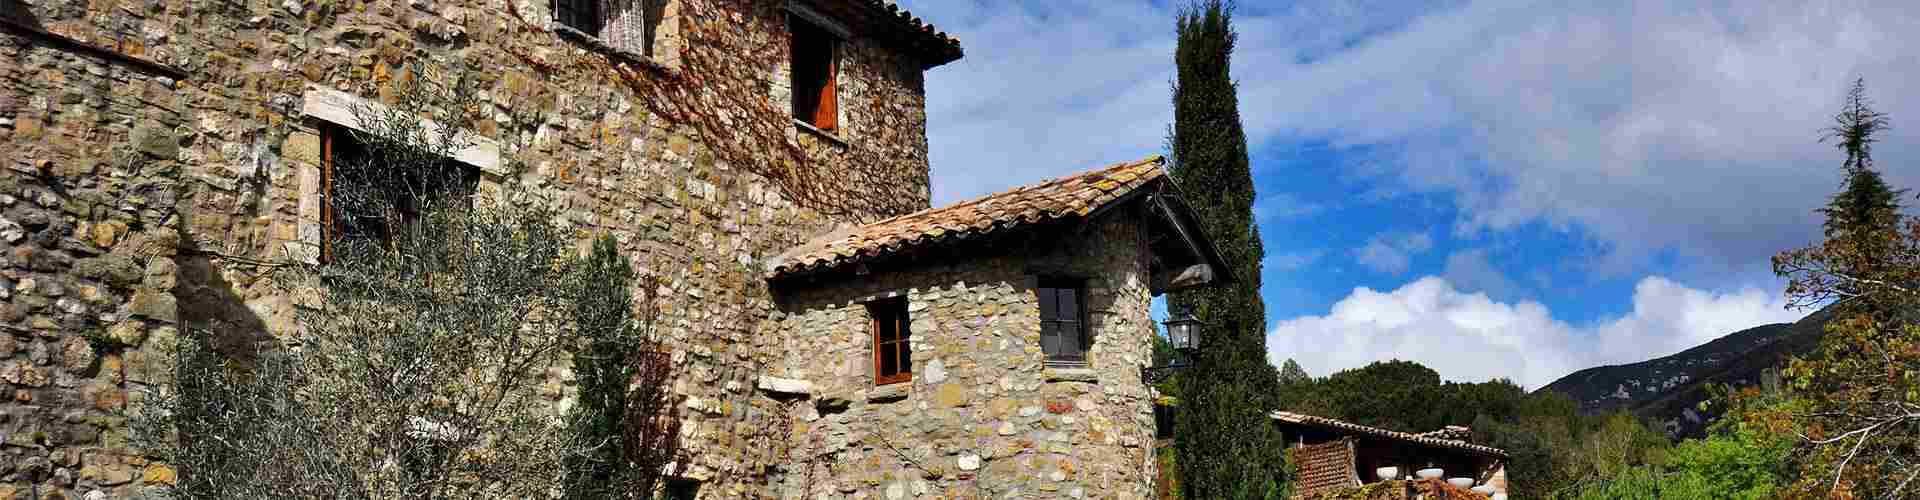 Casas rurales en el País Vasco
           
           


          
          
          

